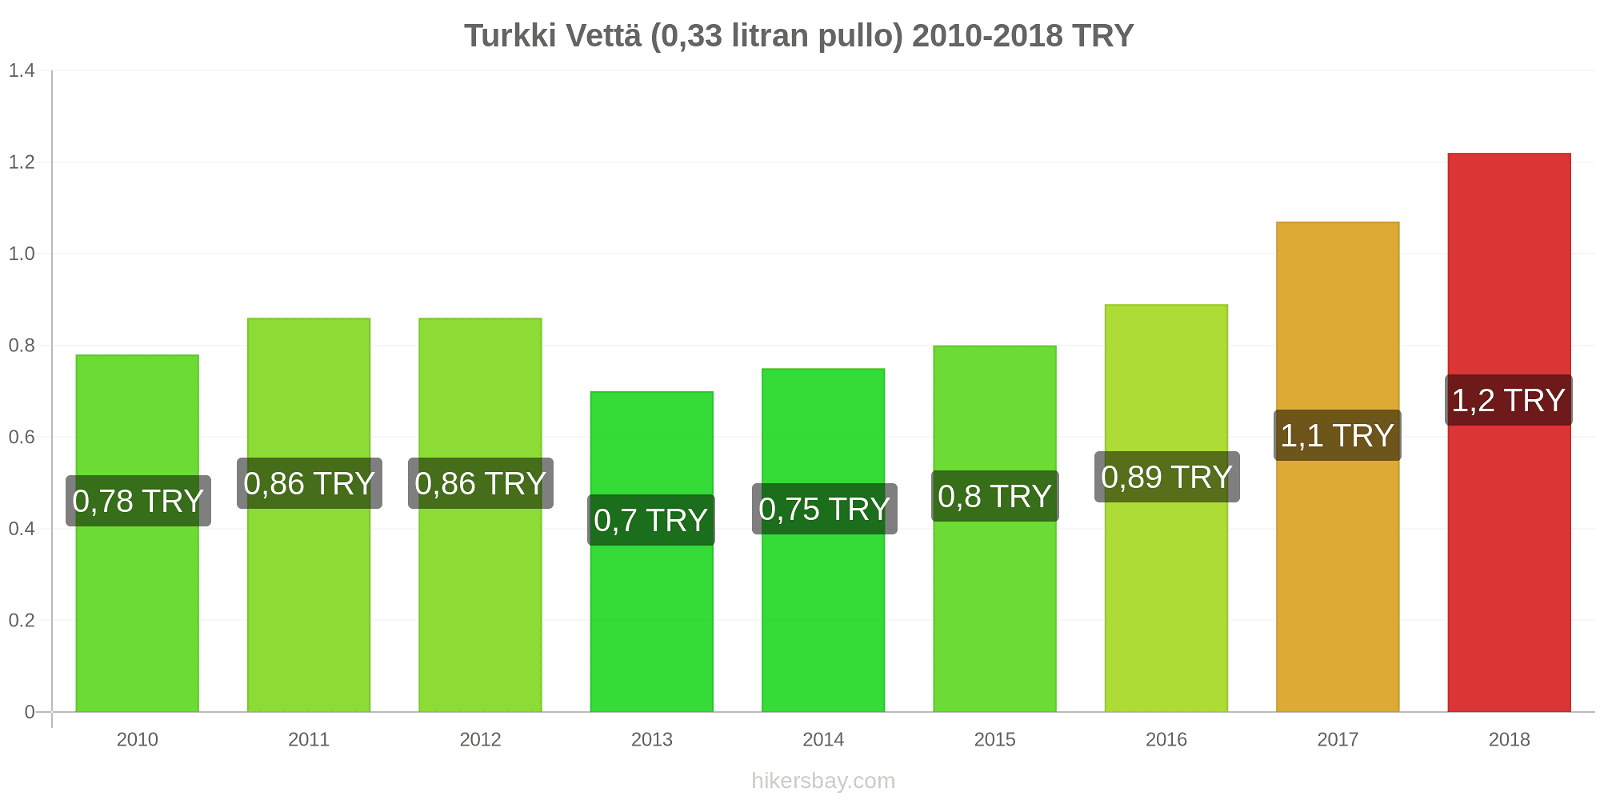 Turkki hintojen muutokset Vettä (0.33 litran pullo) hikersbay.com